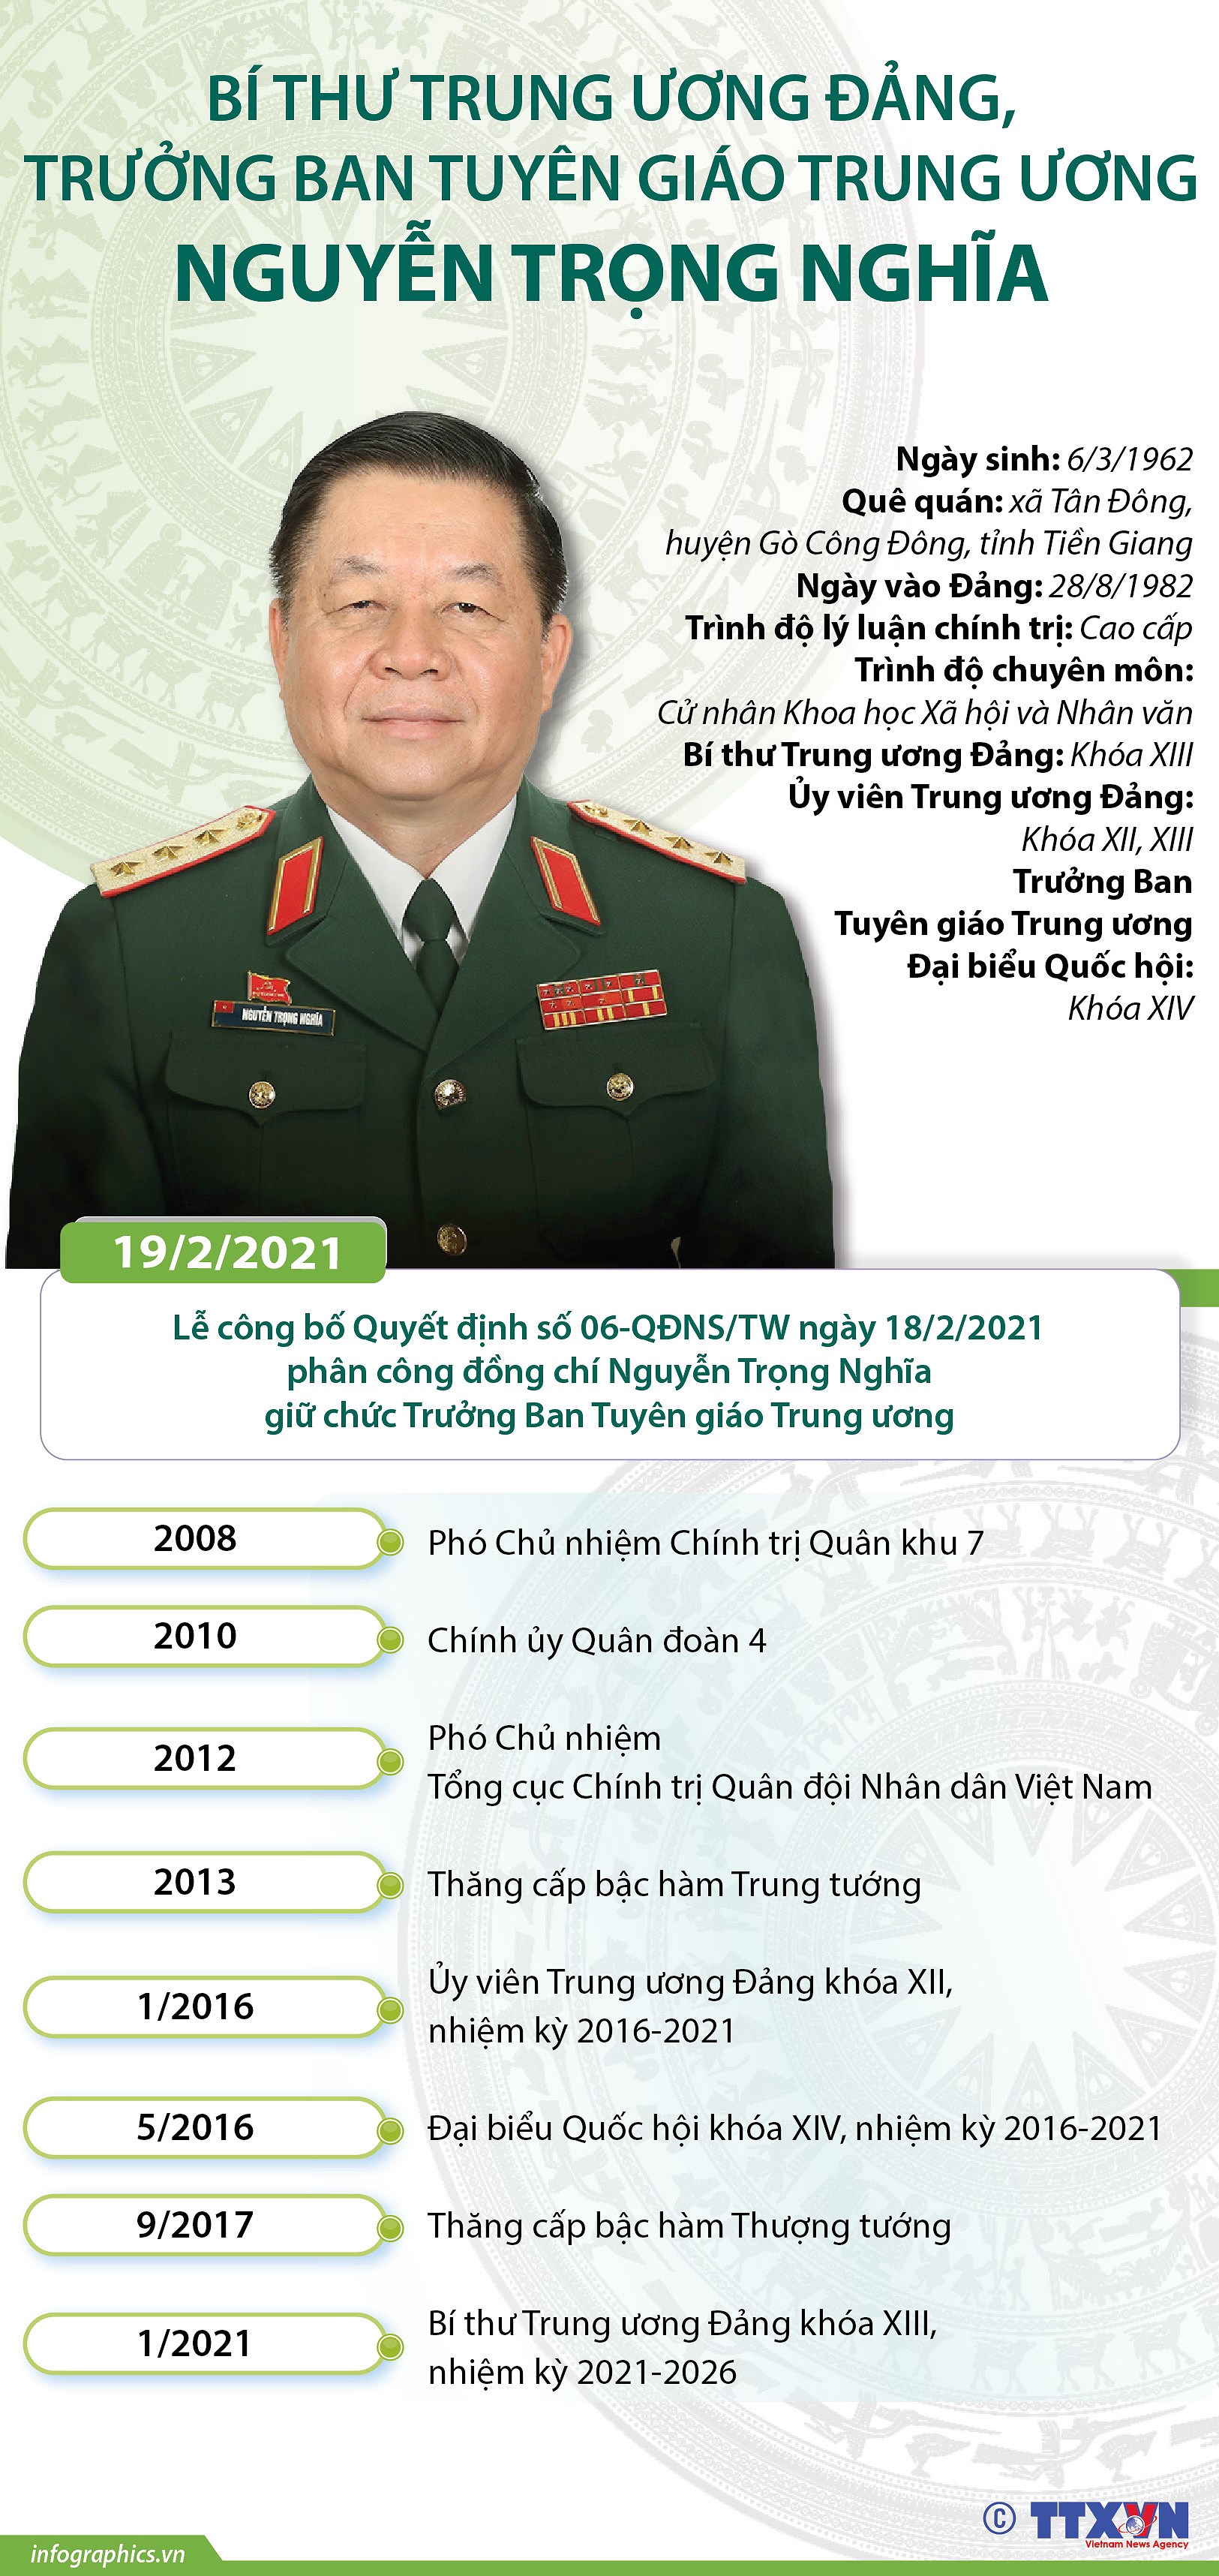 [Infographics] Truong Ban Tuyen giao Trung uong Nguyen Trong Nghia hinh anh 1